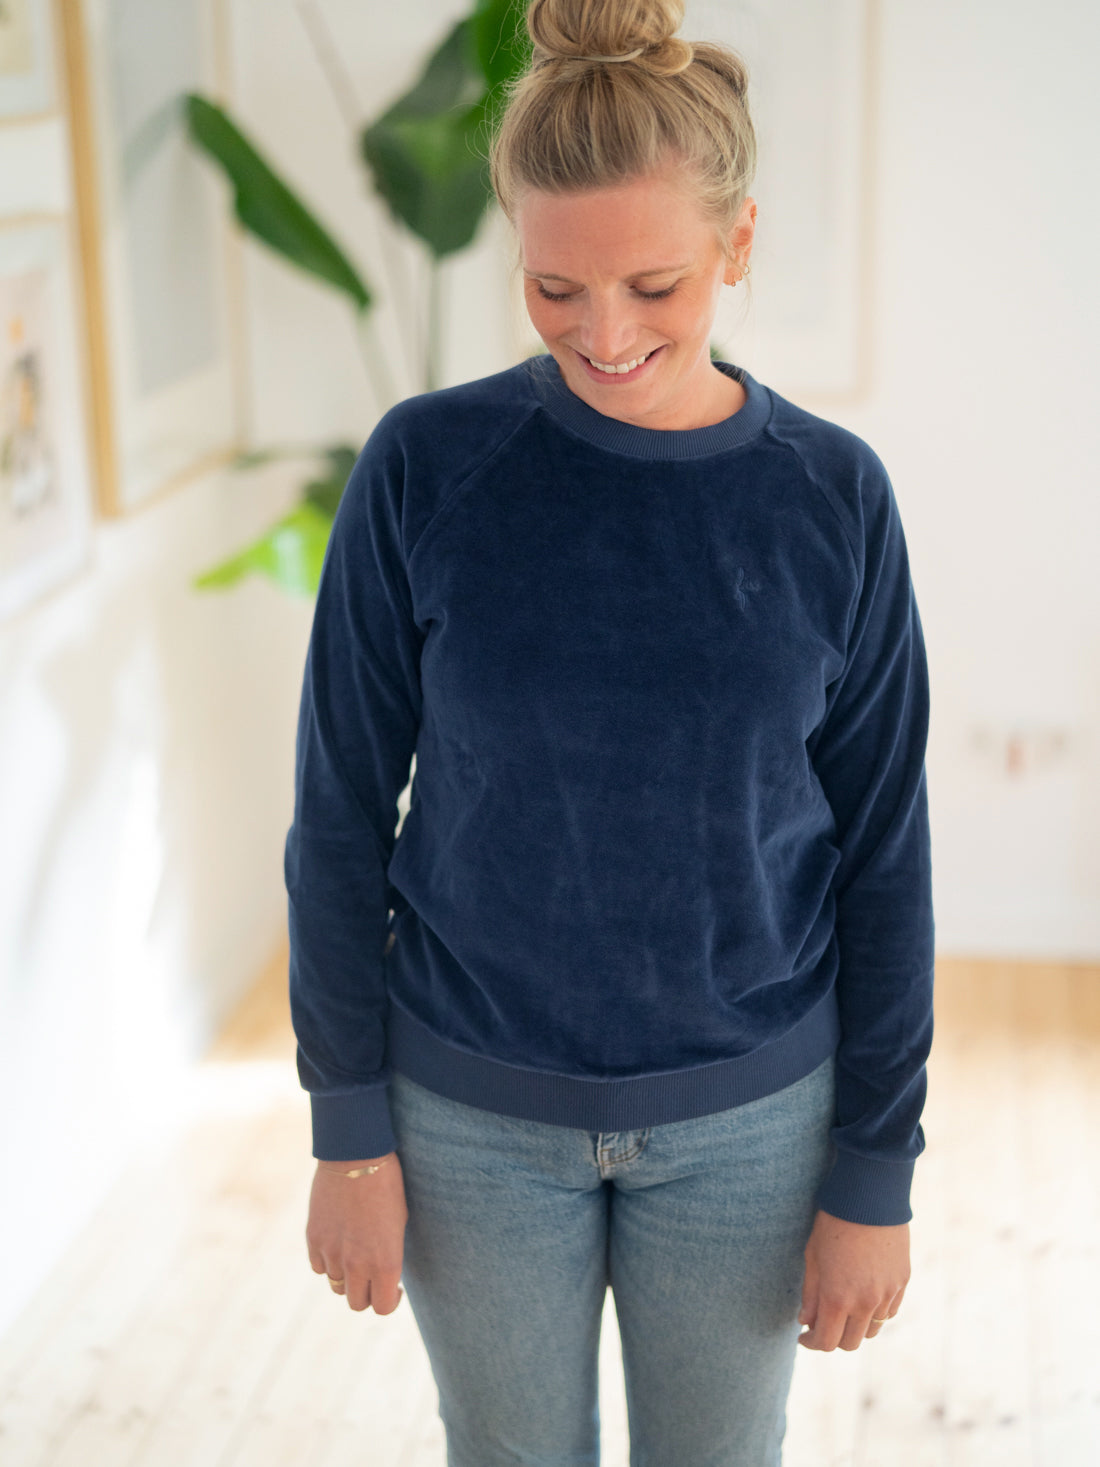 Isi trägt den nachhaltigen FUXBAU Samt Sweater in navy für Frauen aus 100% GOTS zertifizierter Biobaumwolle & made in Portugal.